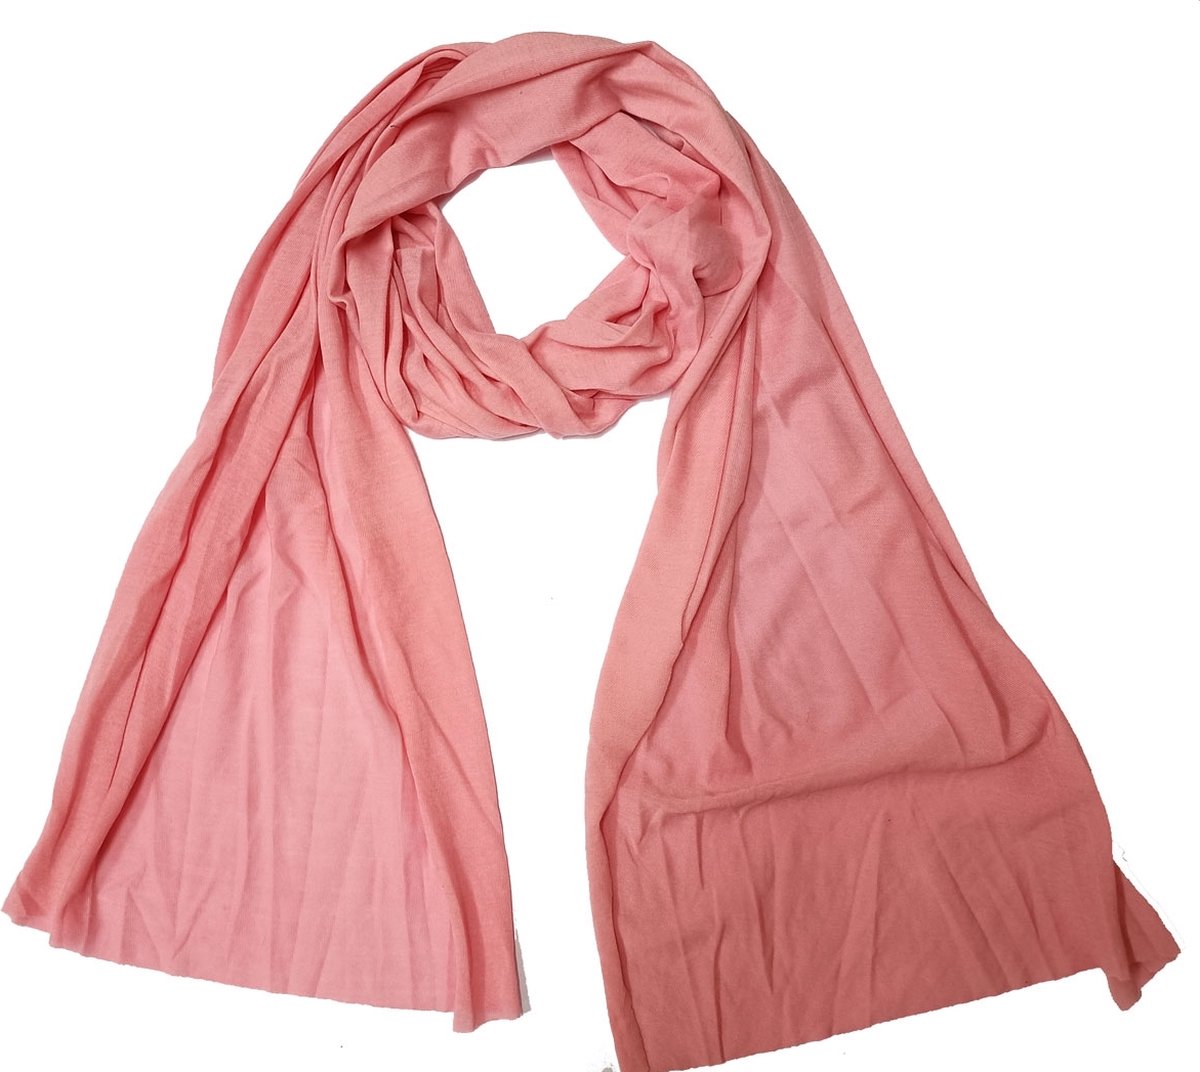 Zachte roze sjaal - Langwerpig model - 170 x 45 Centimeter - Najaarscollectie - Damesdingetjes